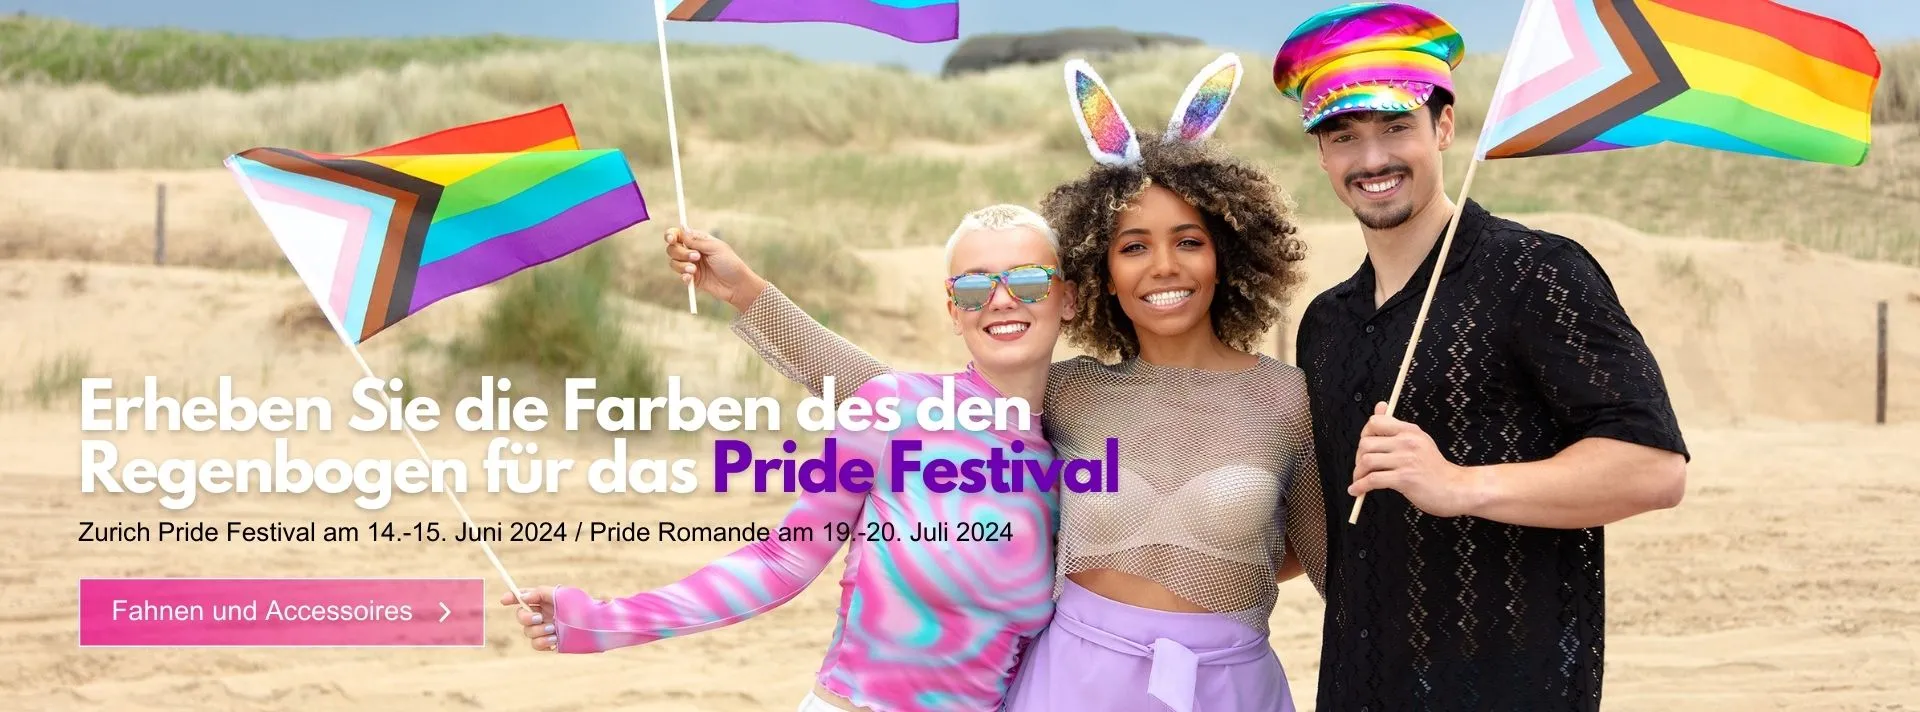 fahnen fur pride festival